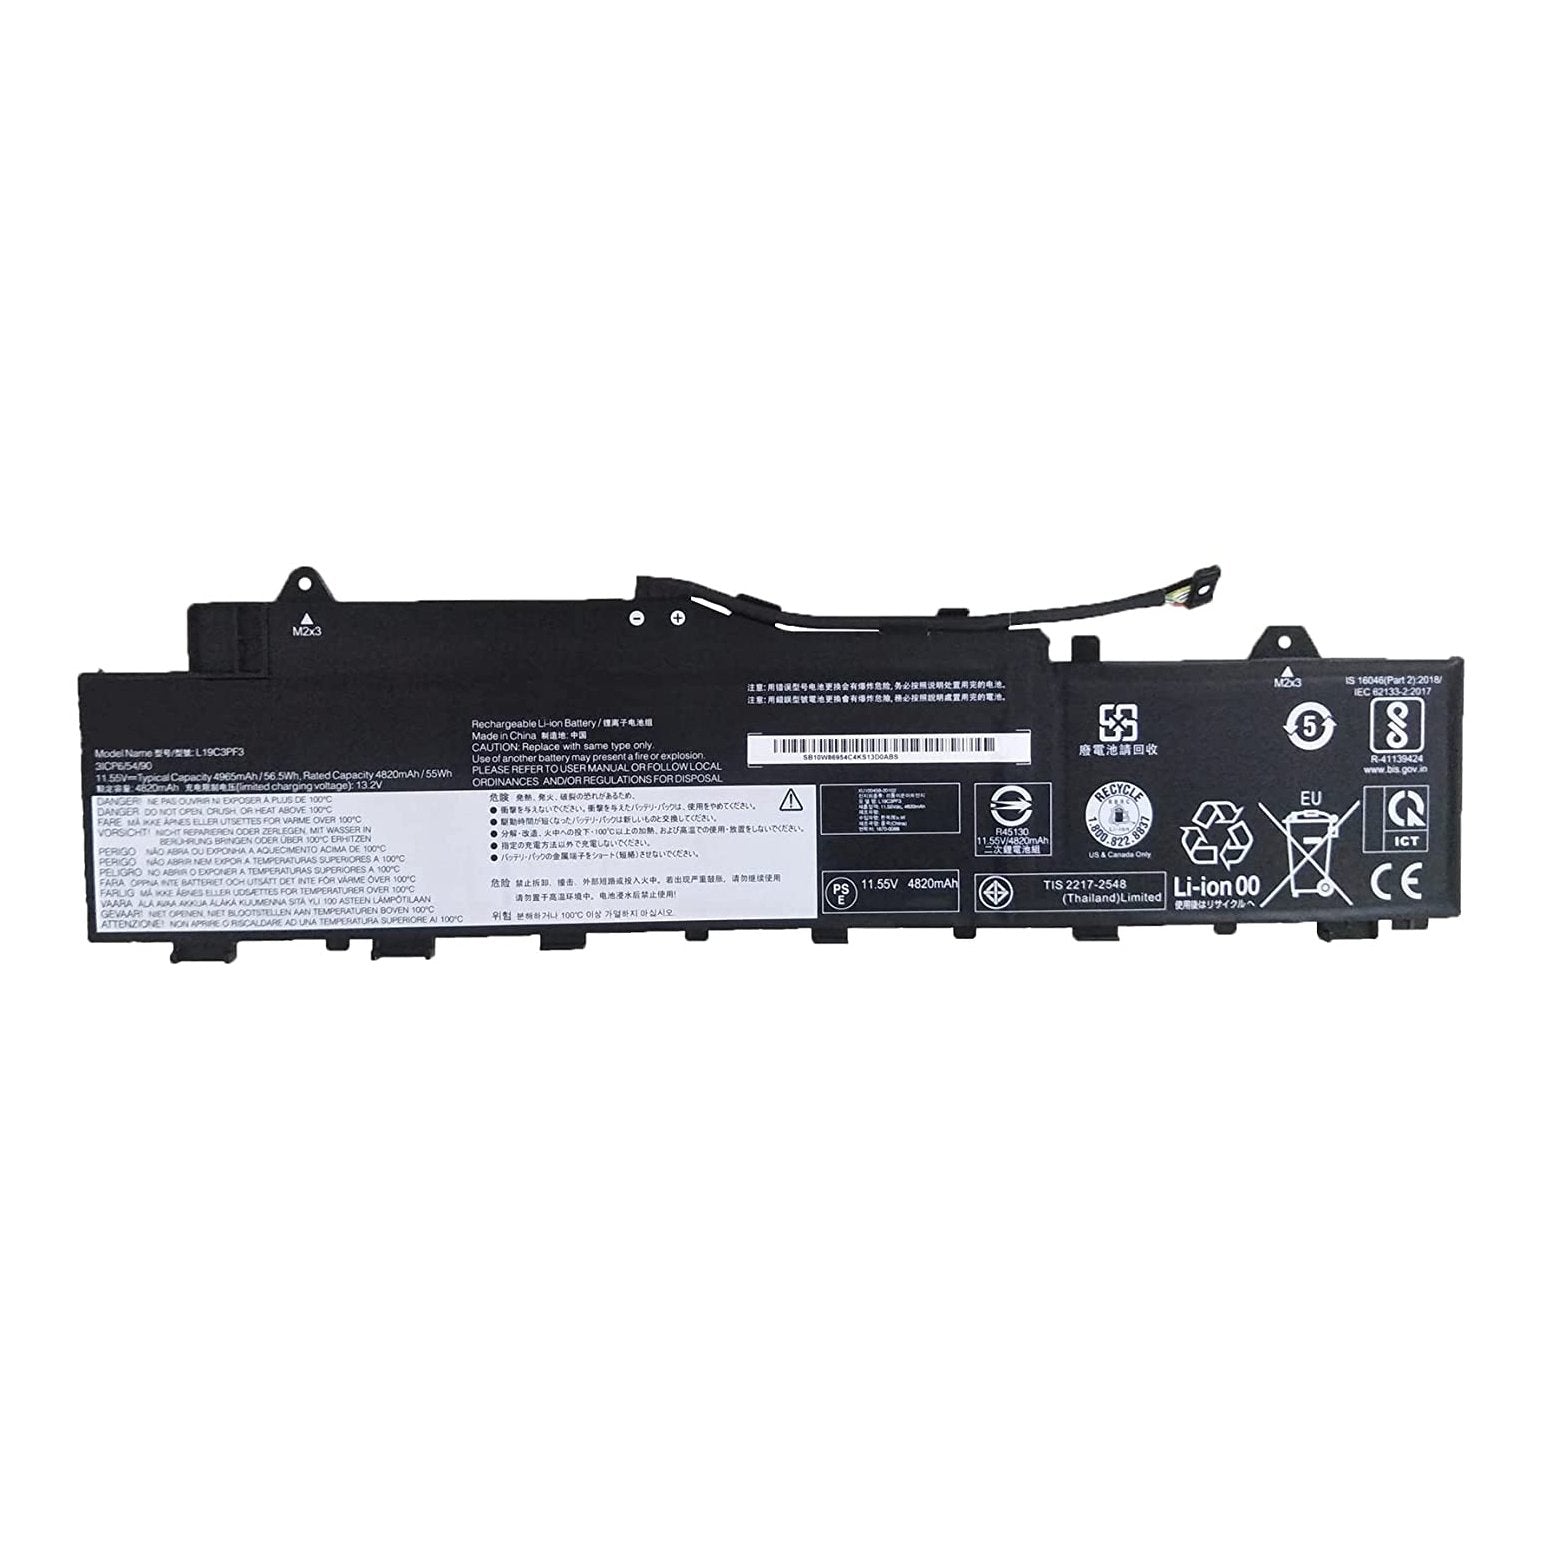 Lenovo IdeaPad 5-14IIL05 Battery New